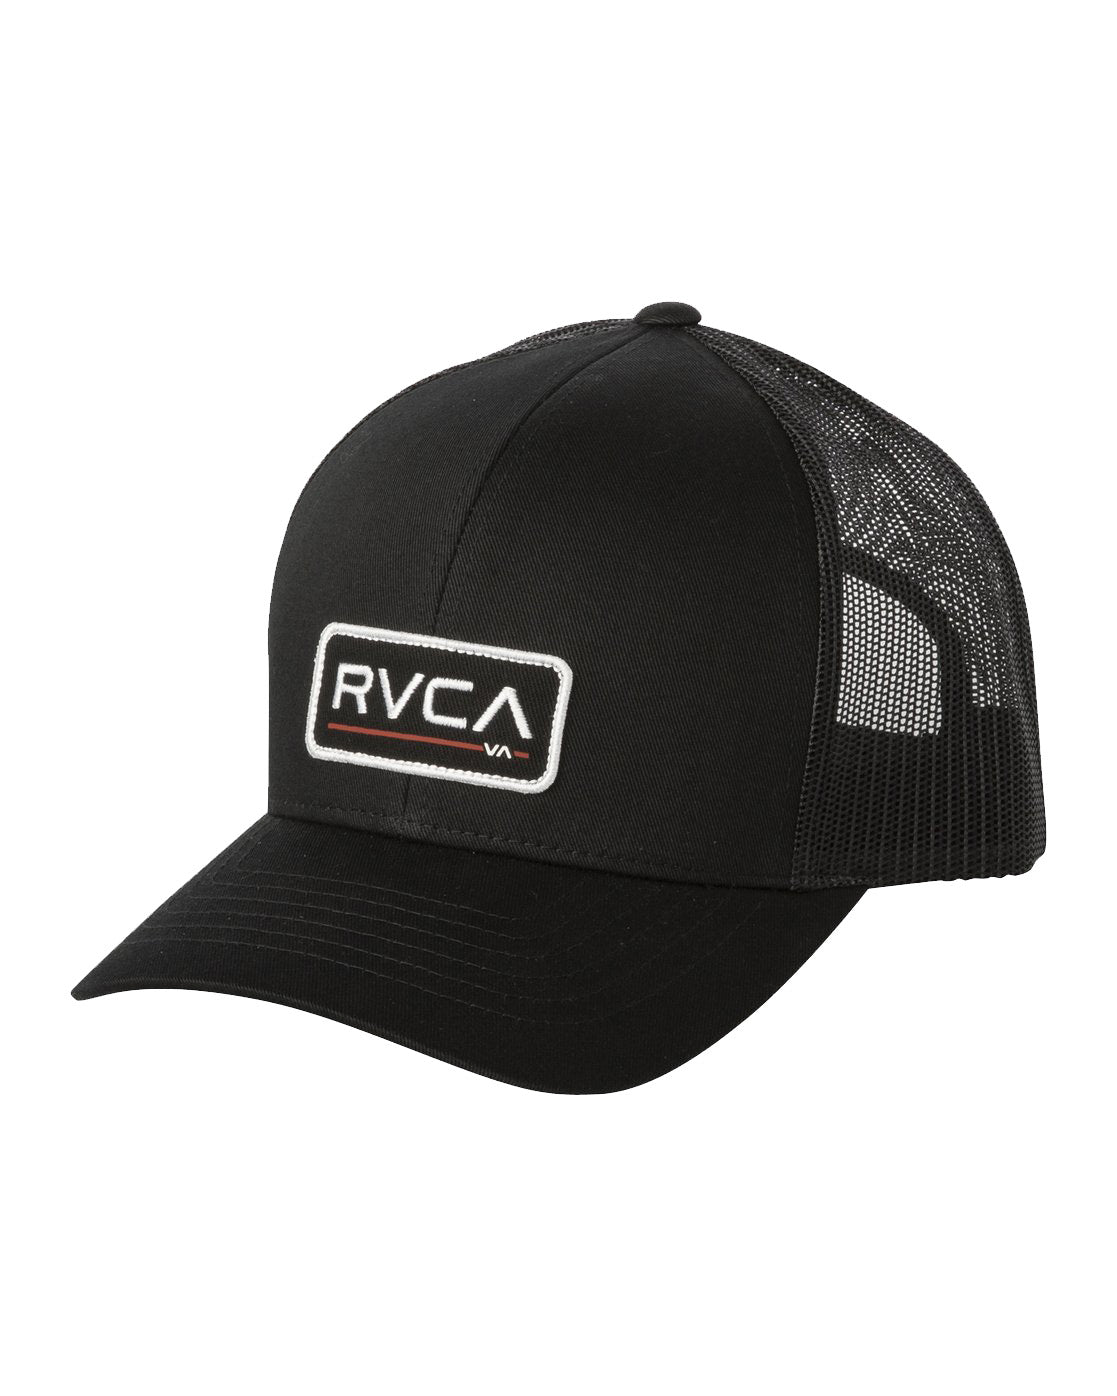 RVCA Boys Ticket Trucker Hat BBK OS